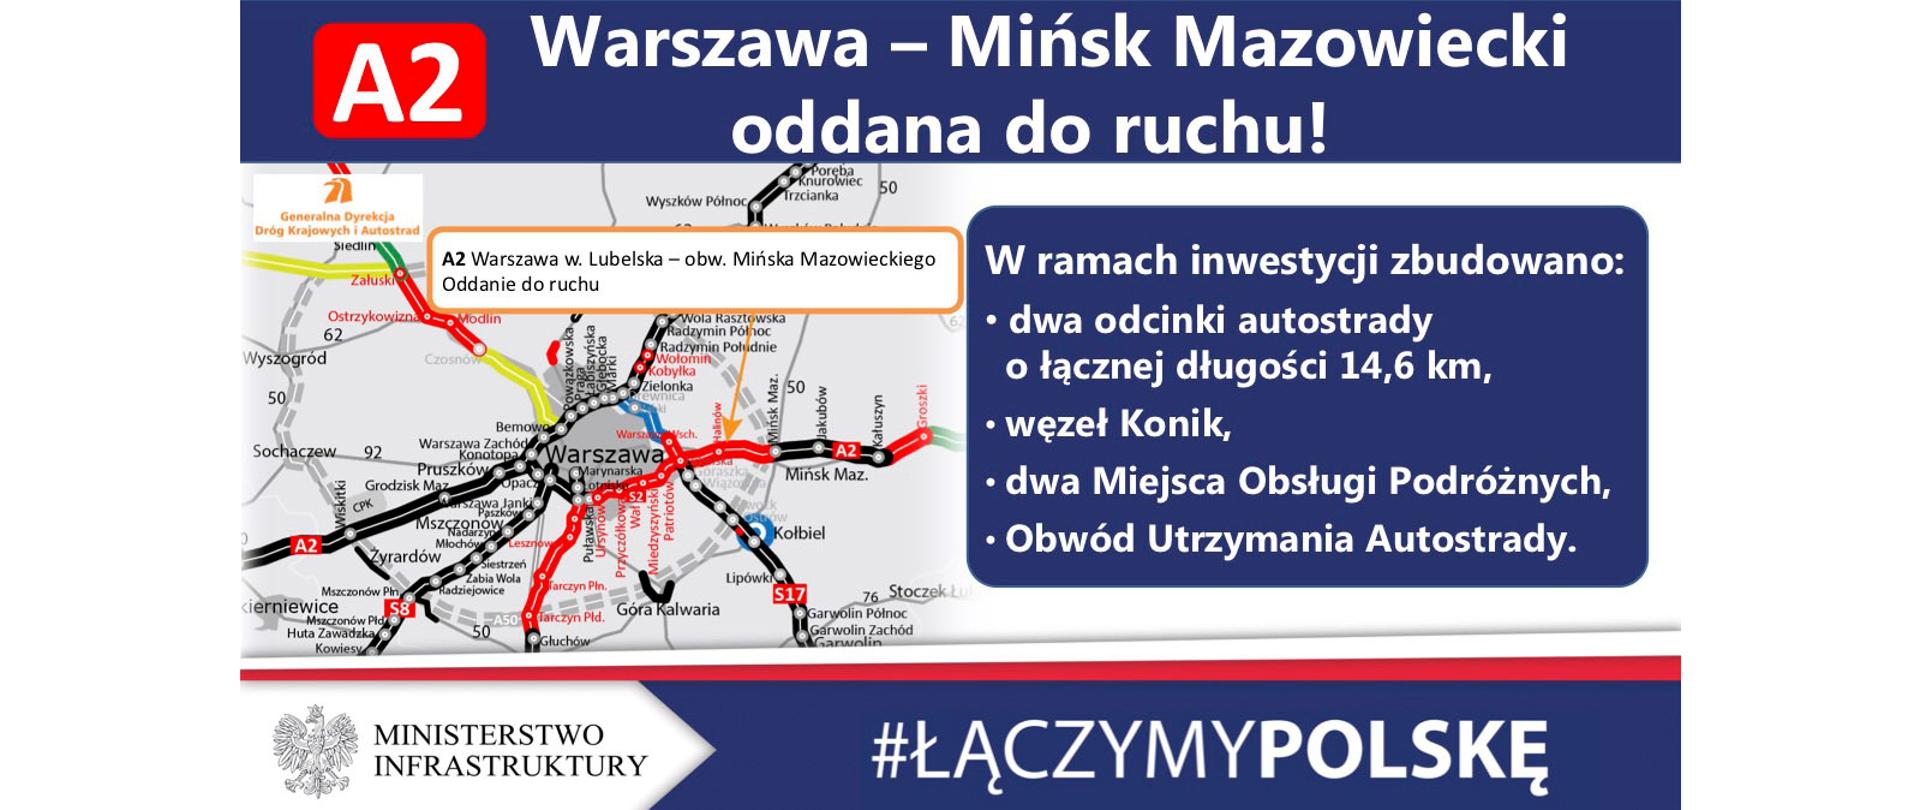 Pierwsze 15 kilometrów autostrady A2 na wschód od Warszawy oddane do ruchu